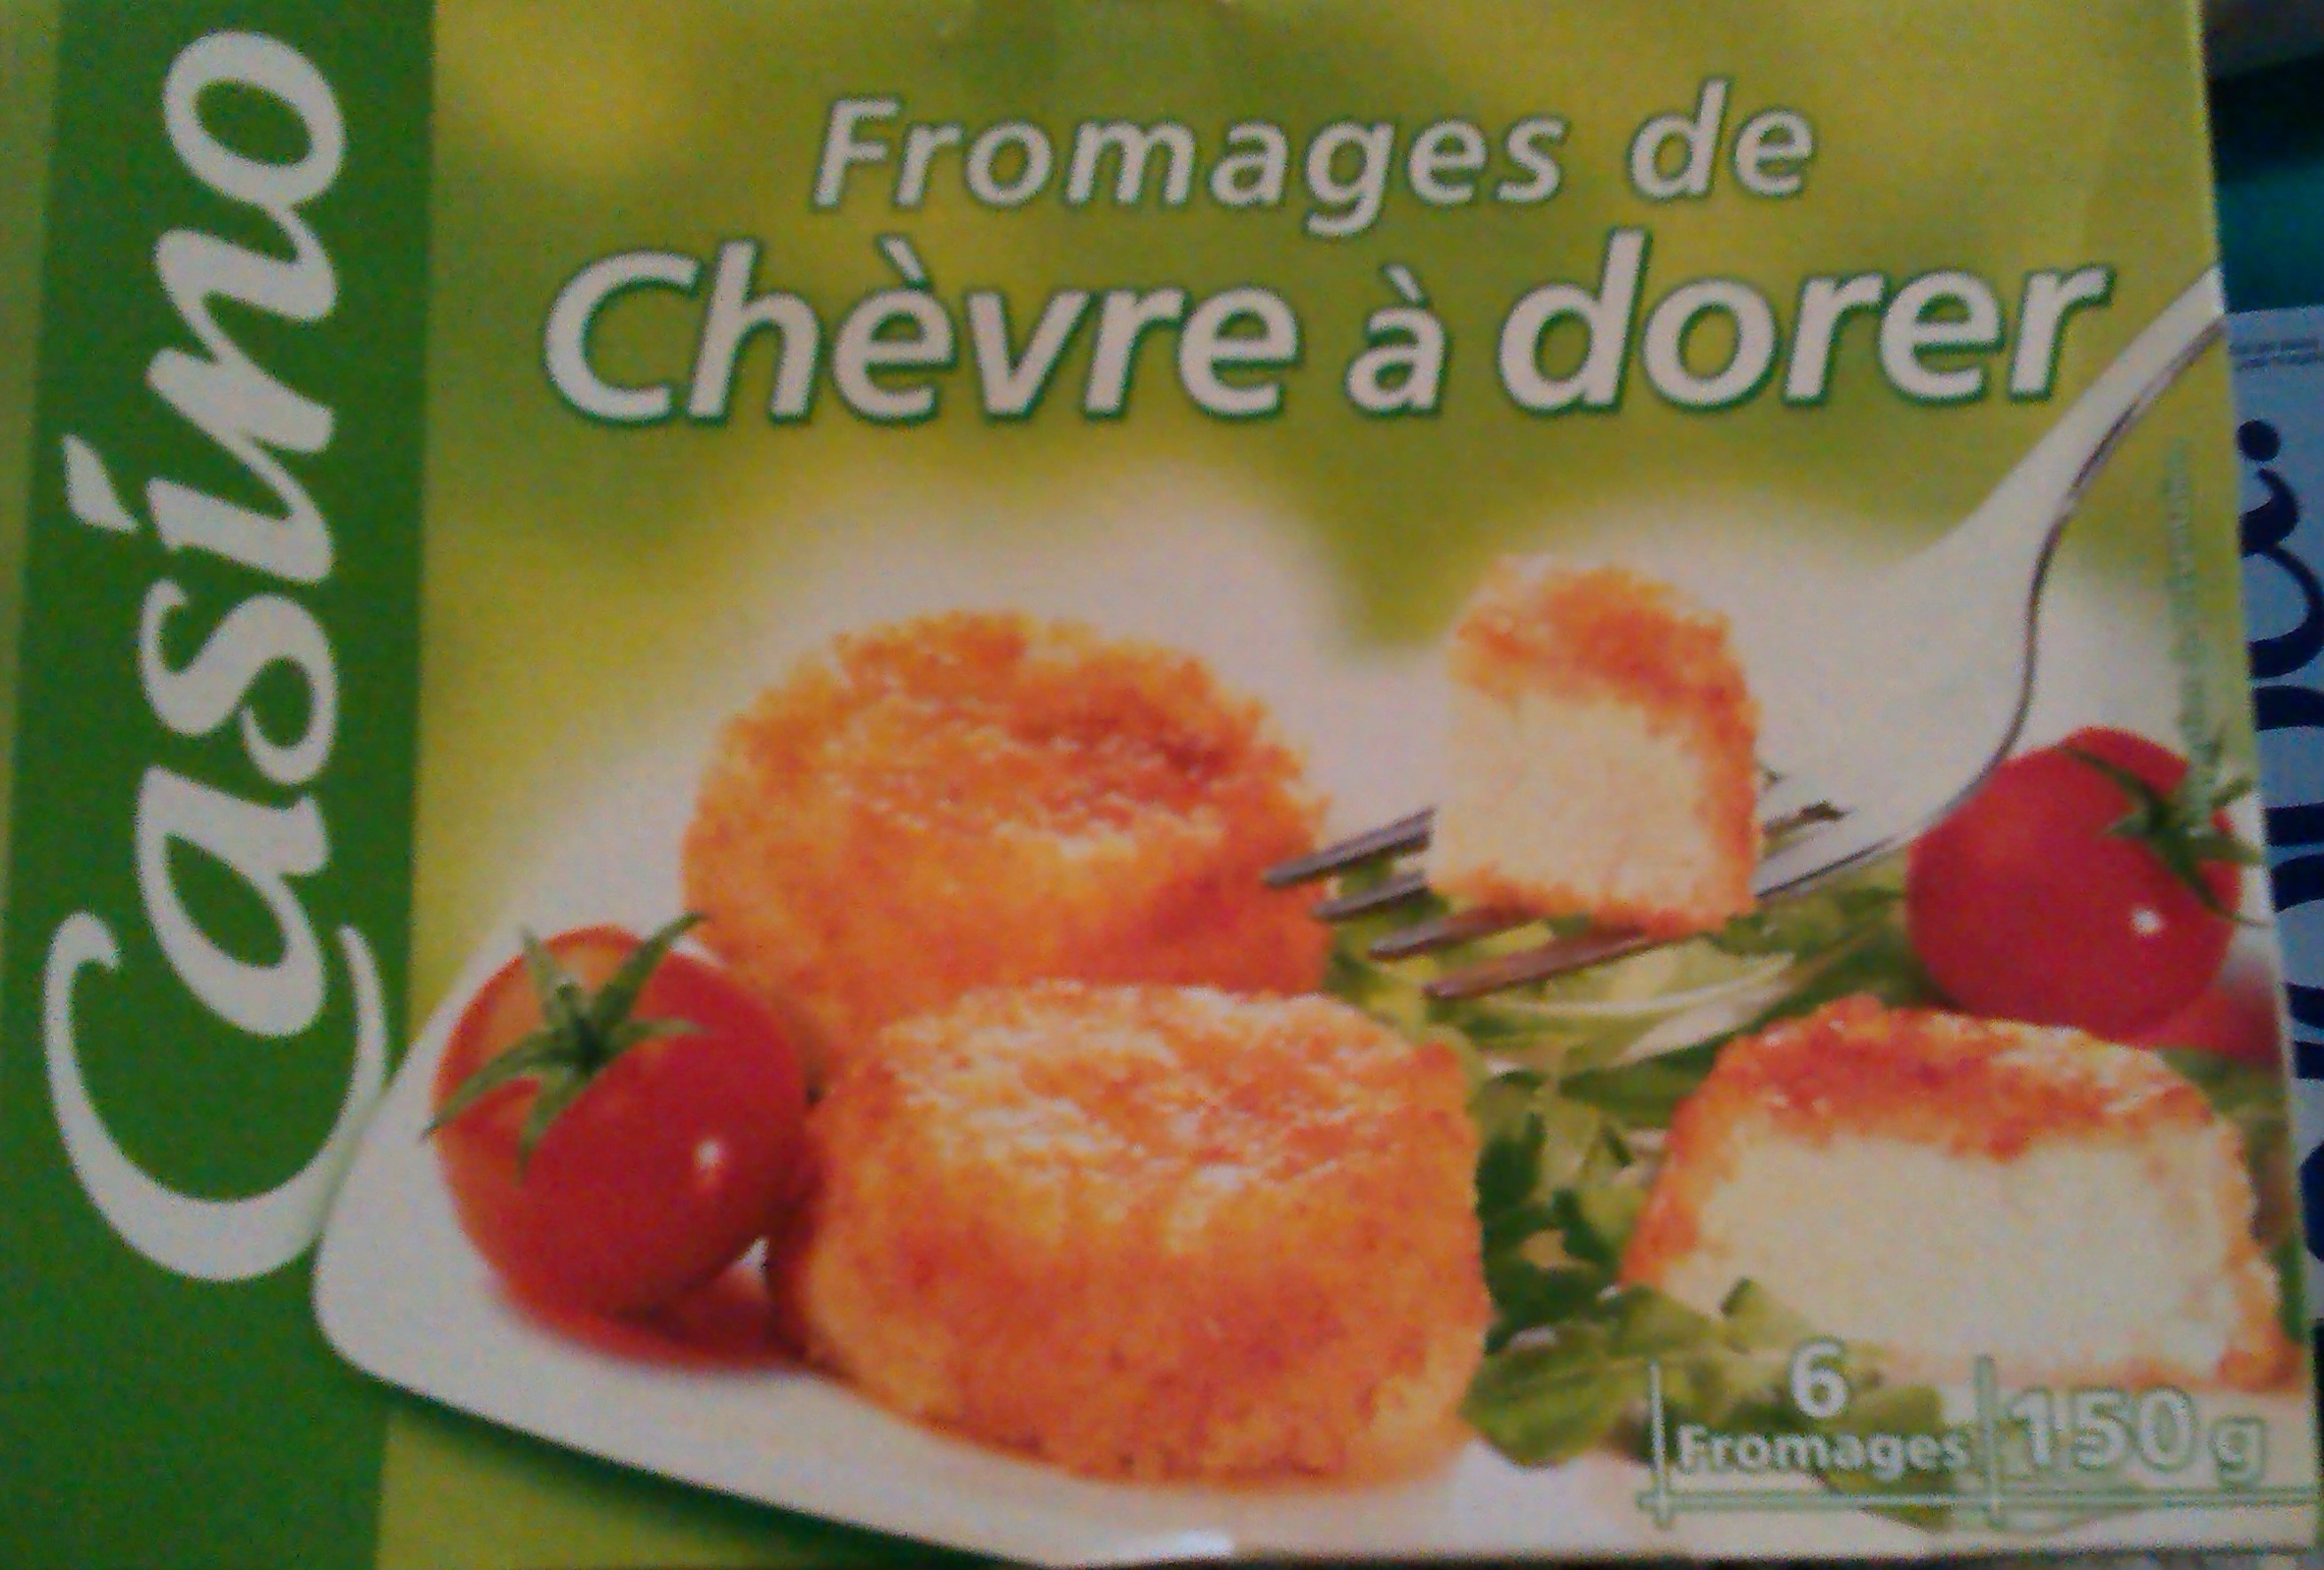 Fromages de chèvre à dorer - Product - fr